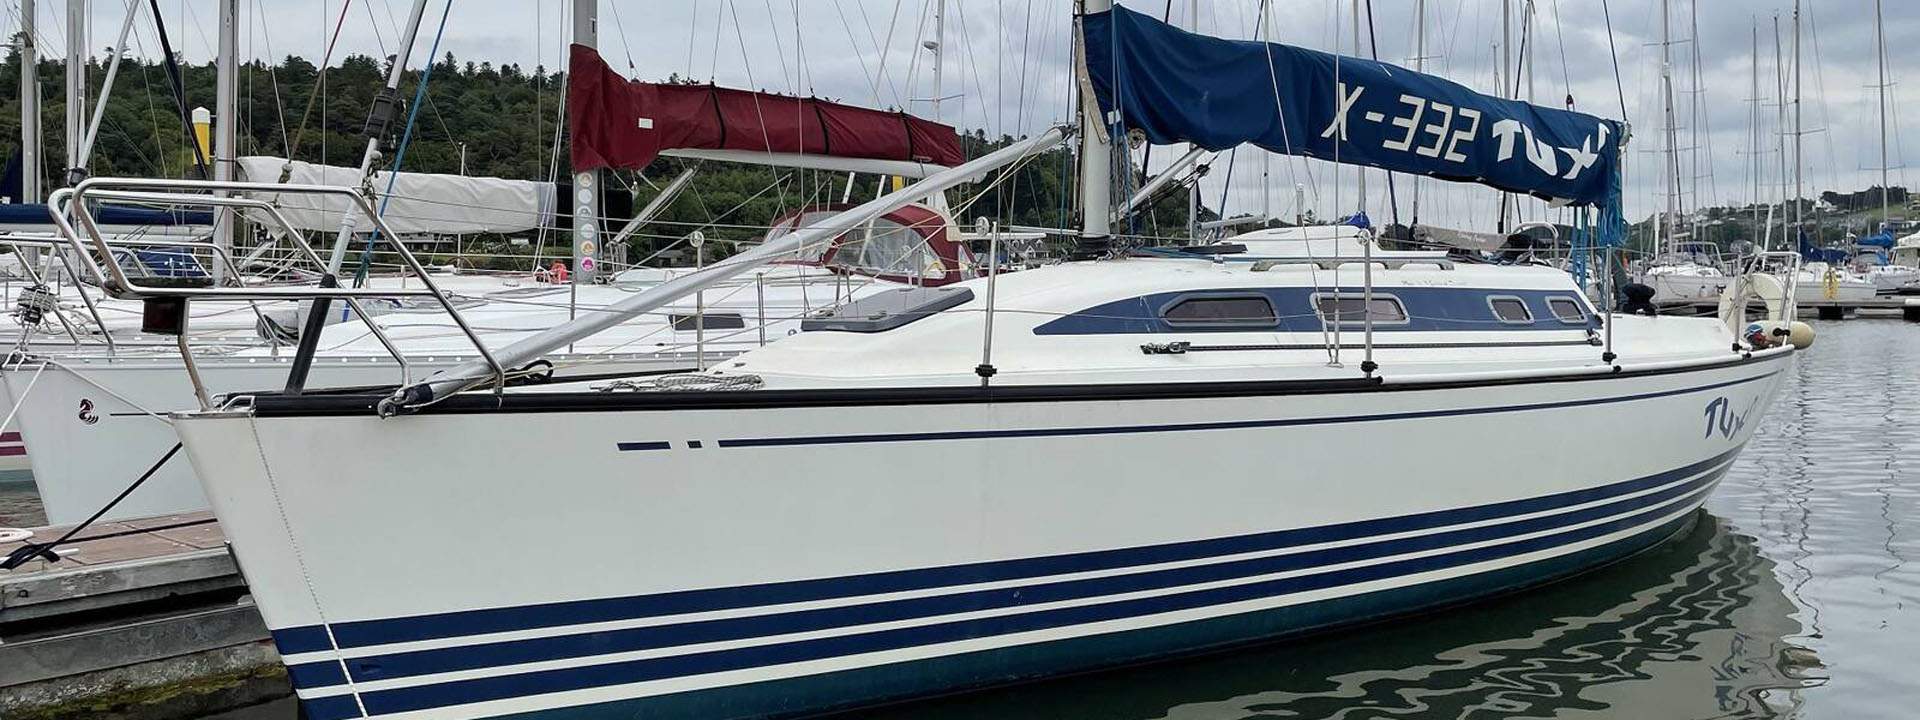 X Yacht 332